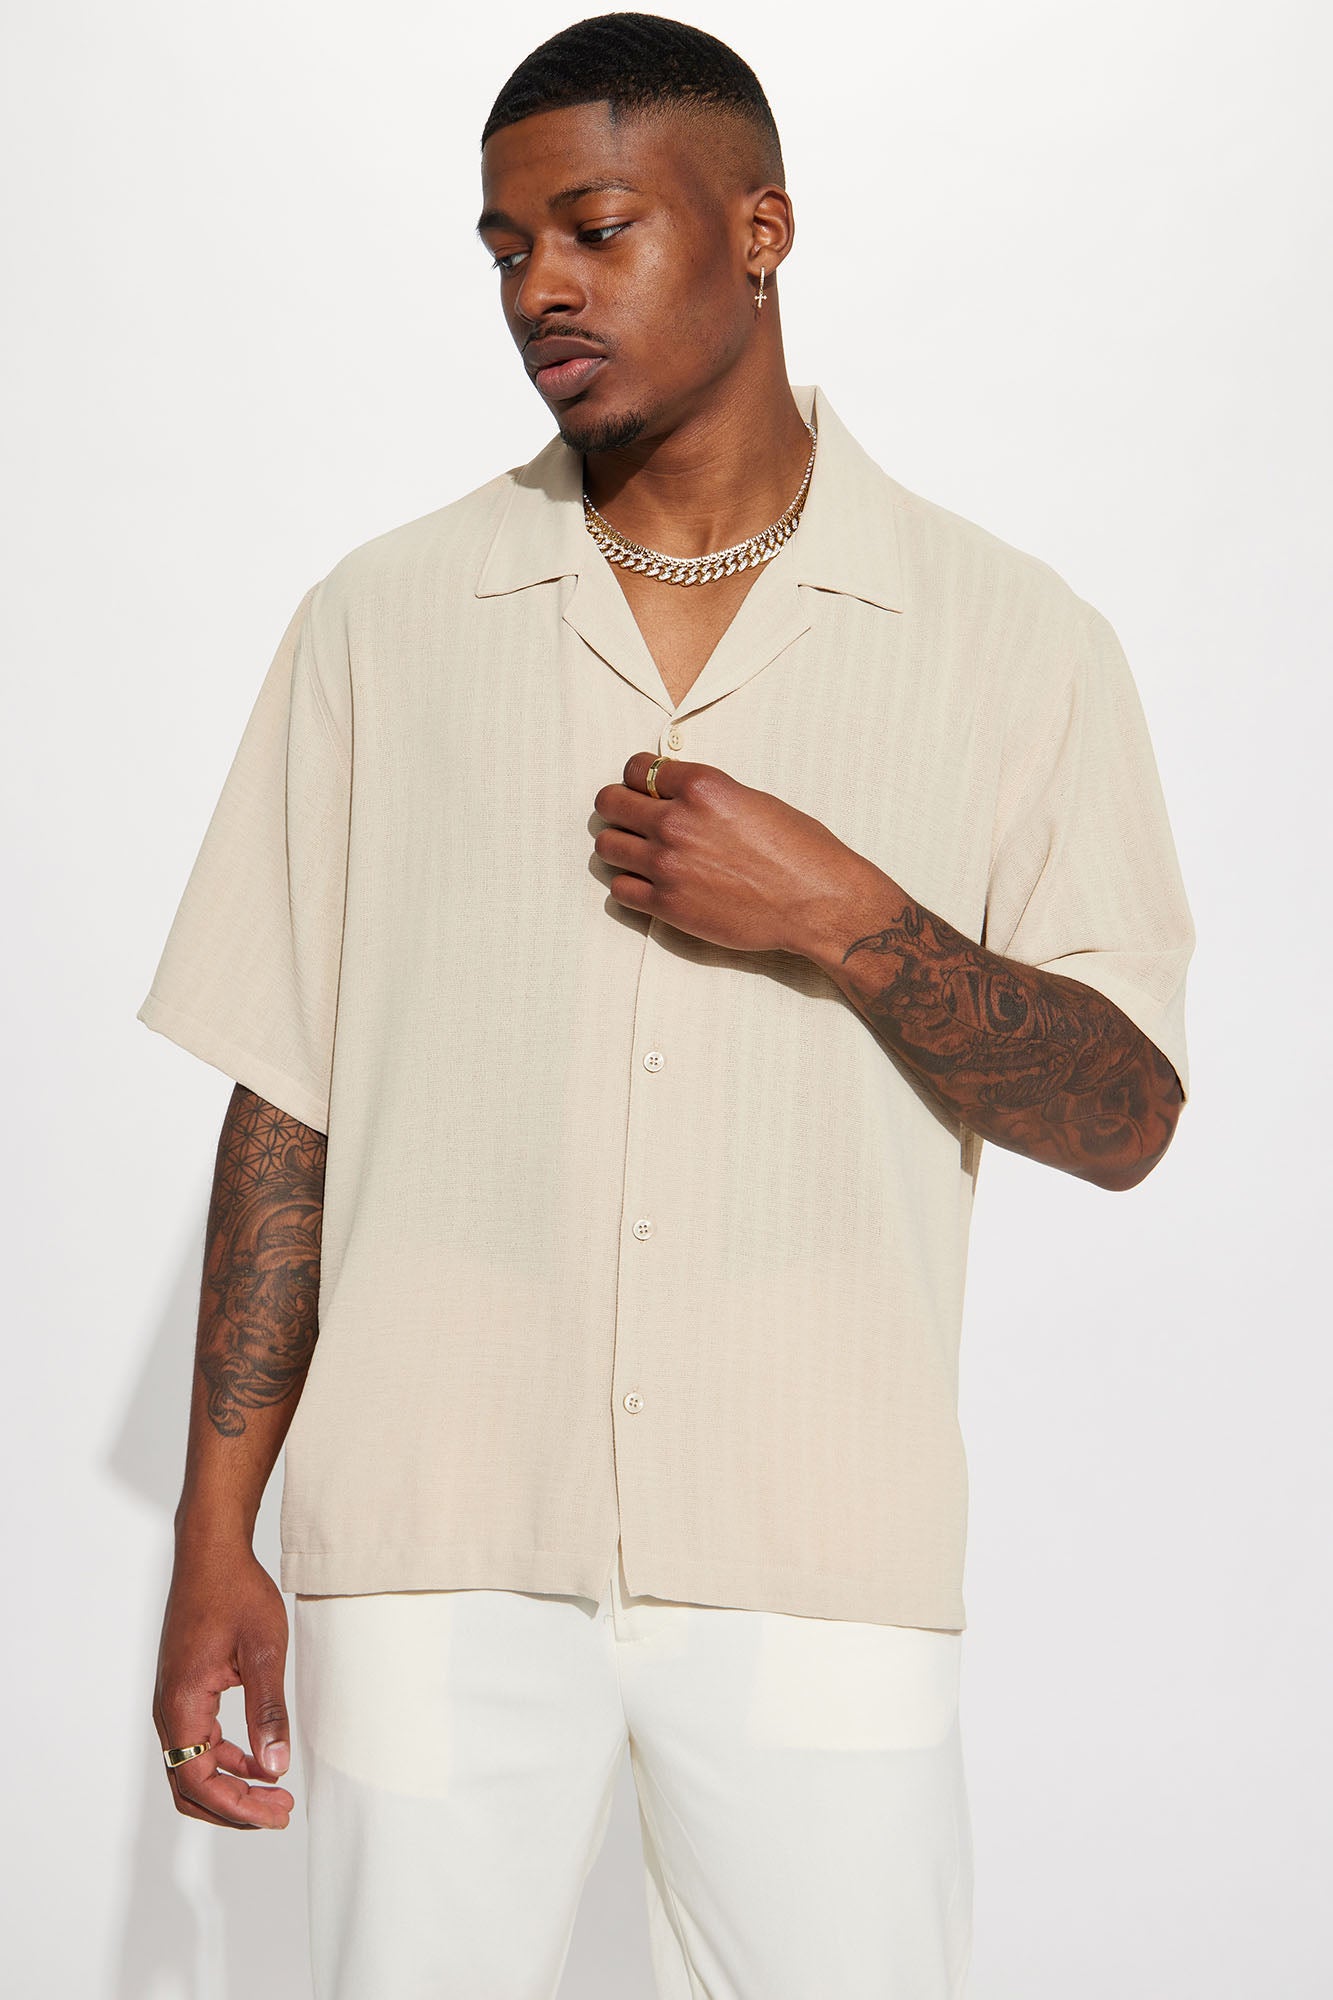 Dune Textured Short Sleeve Button Up Shirt - Cream